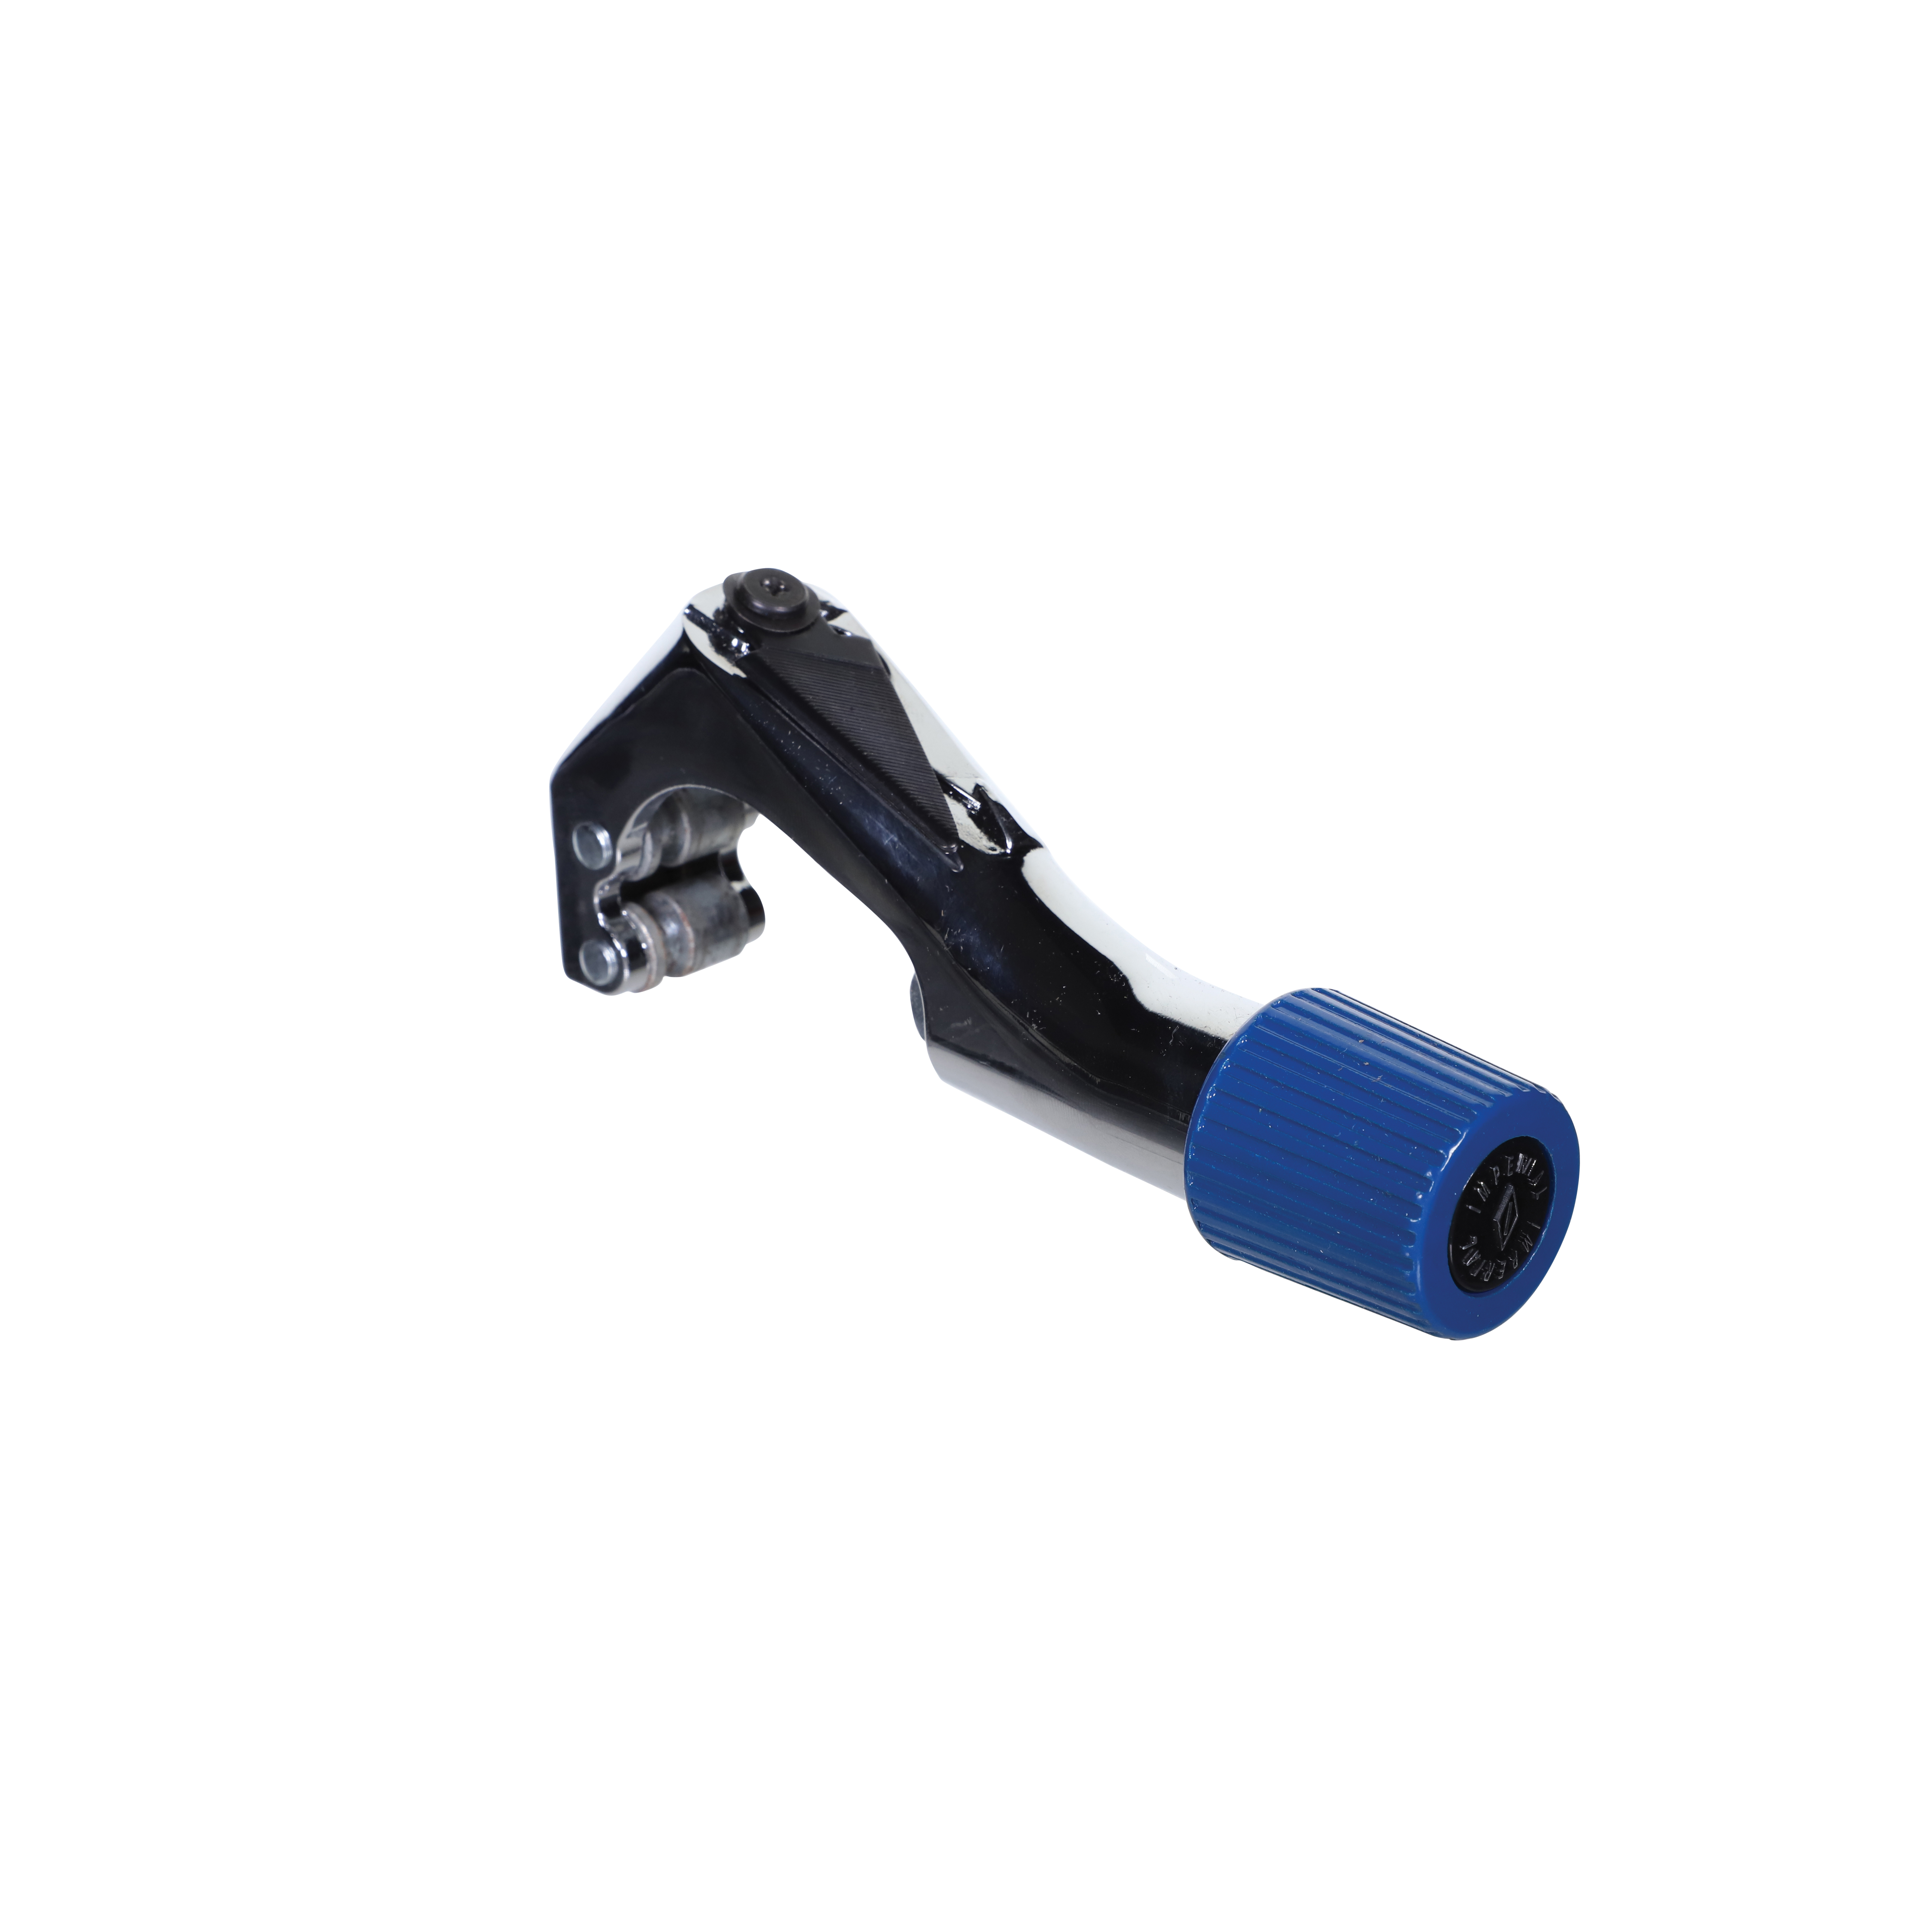 Imperial® 312-FC Tube Cutter, 1-5/8 in Max Pipe/Tube Dia, 1/4 in Mini Pipe/Tube Dia